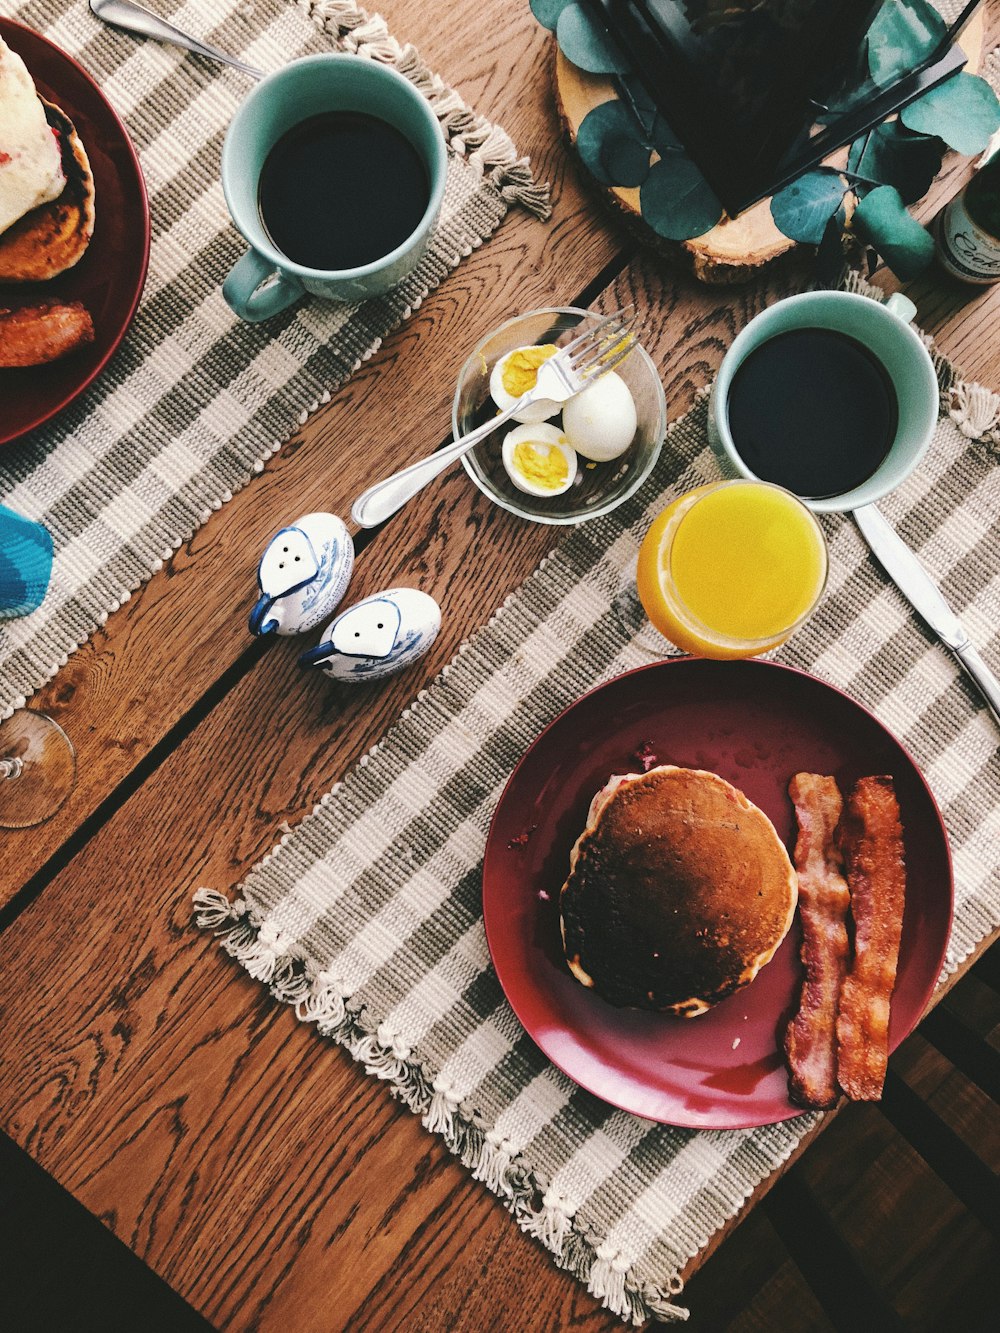 gebackenes Brot auf runder roter Keramikplatte neben einem Glas Orangensaft, einer Tasse Kaffee und gekochten Eiern